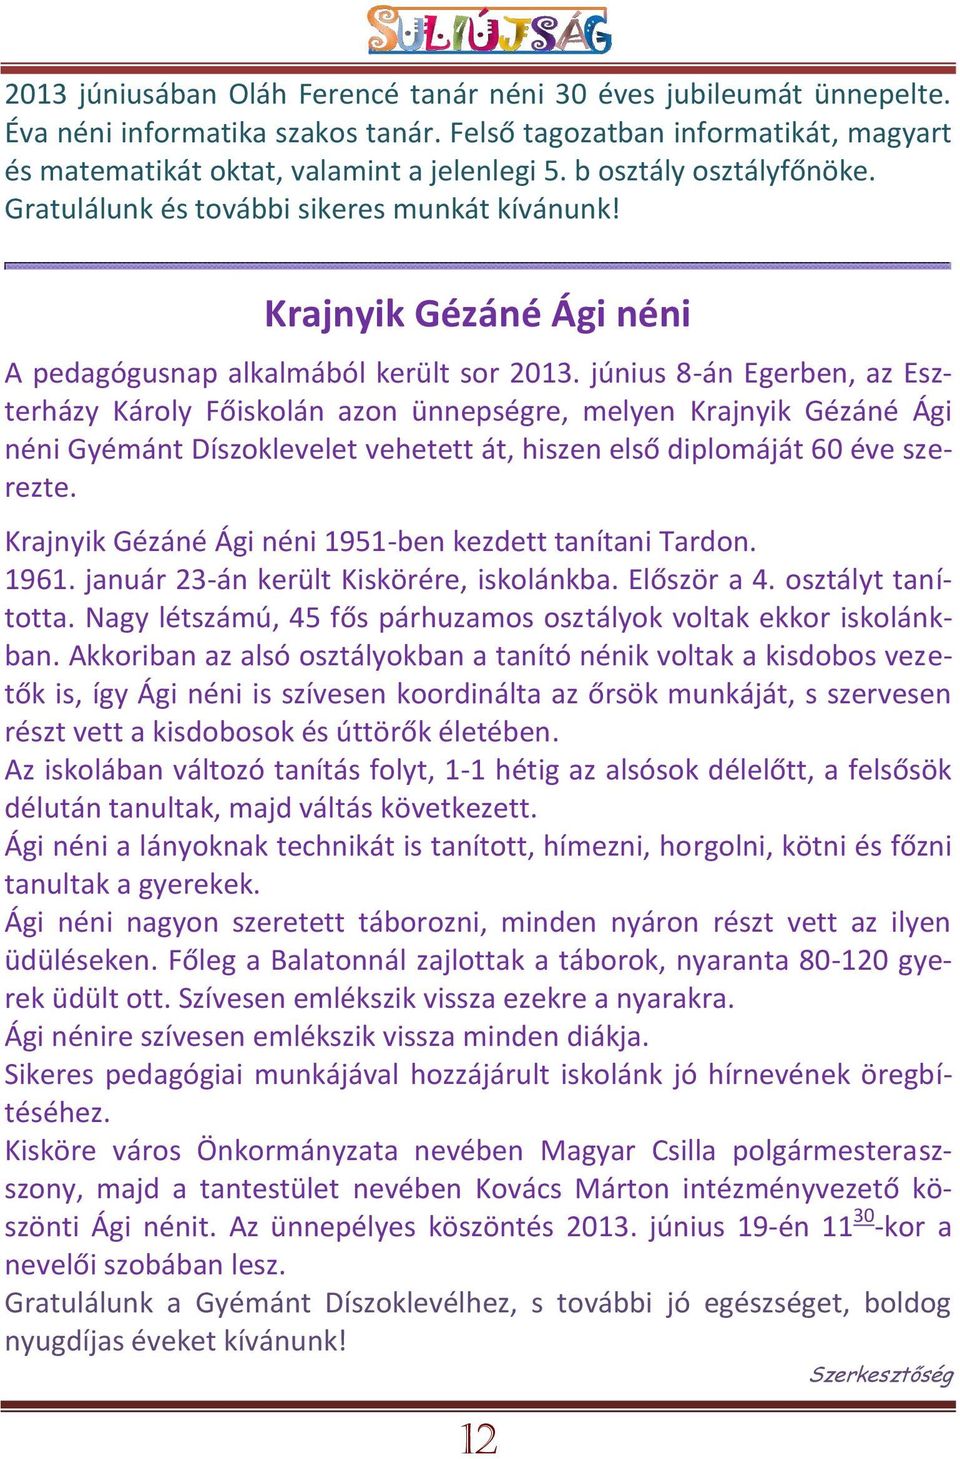 június 8-án Egerben, az Eszterházy Károly Főiskolán azon ünnepségre, melyen Krajnyik Gézáné Ági néni Gyémánt Díszoklevelet vehetett át, hiszen első diplomáját 60 éve szerezte.